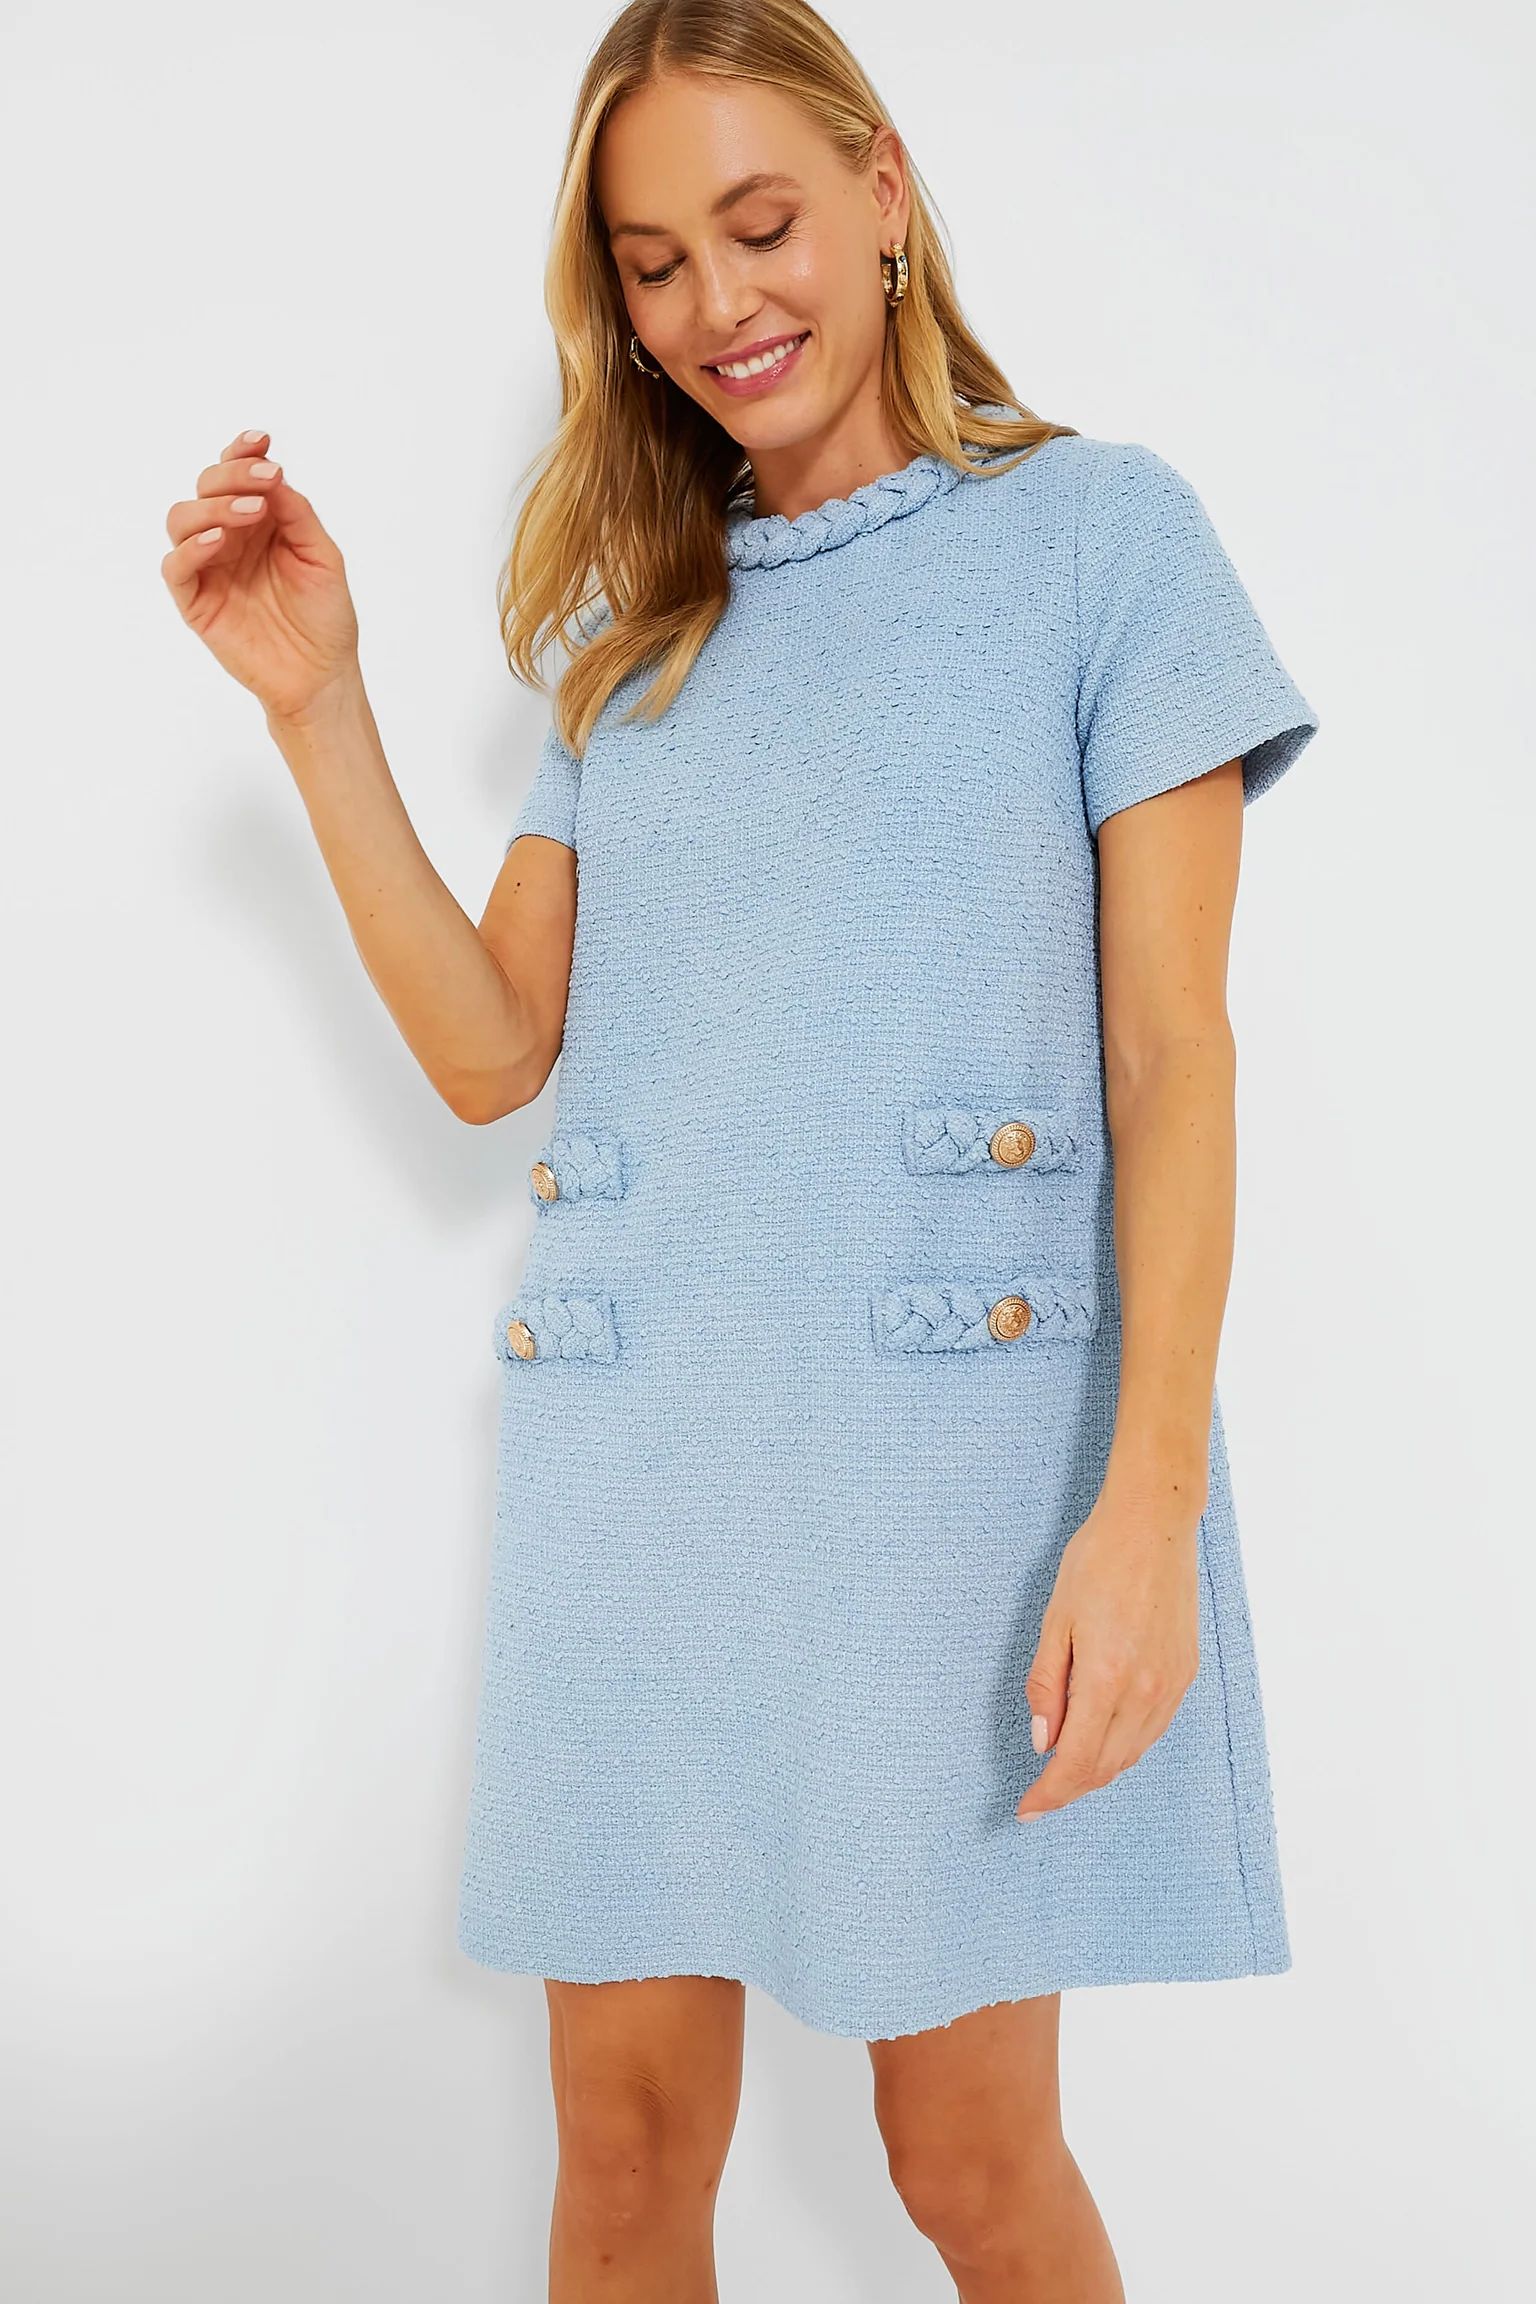 Heathered Blue Tweed Jackie Dress | Tuckernuck (US)